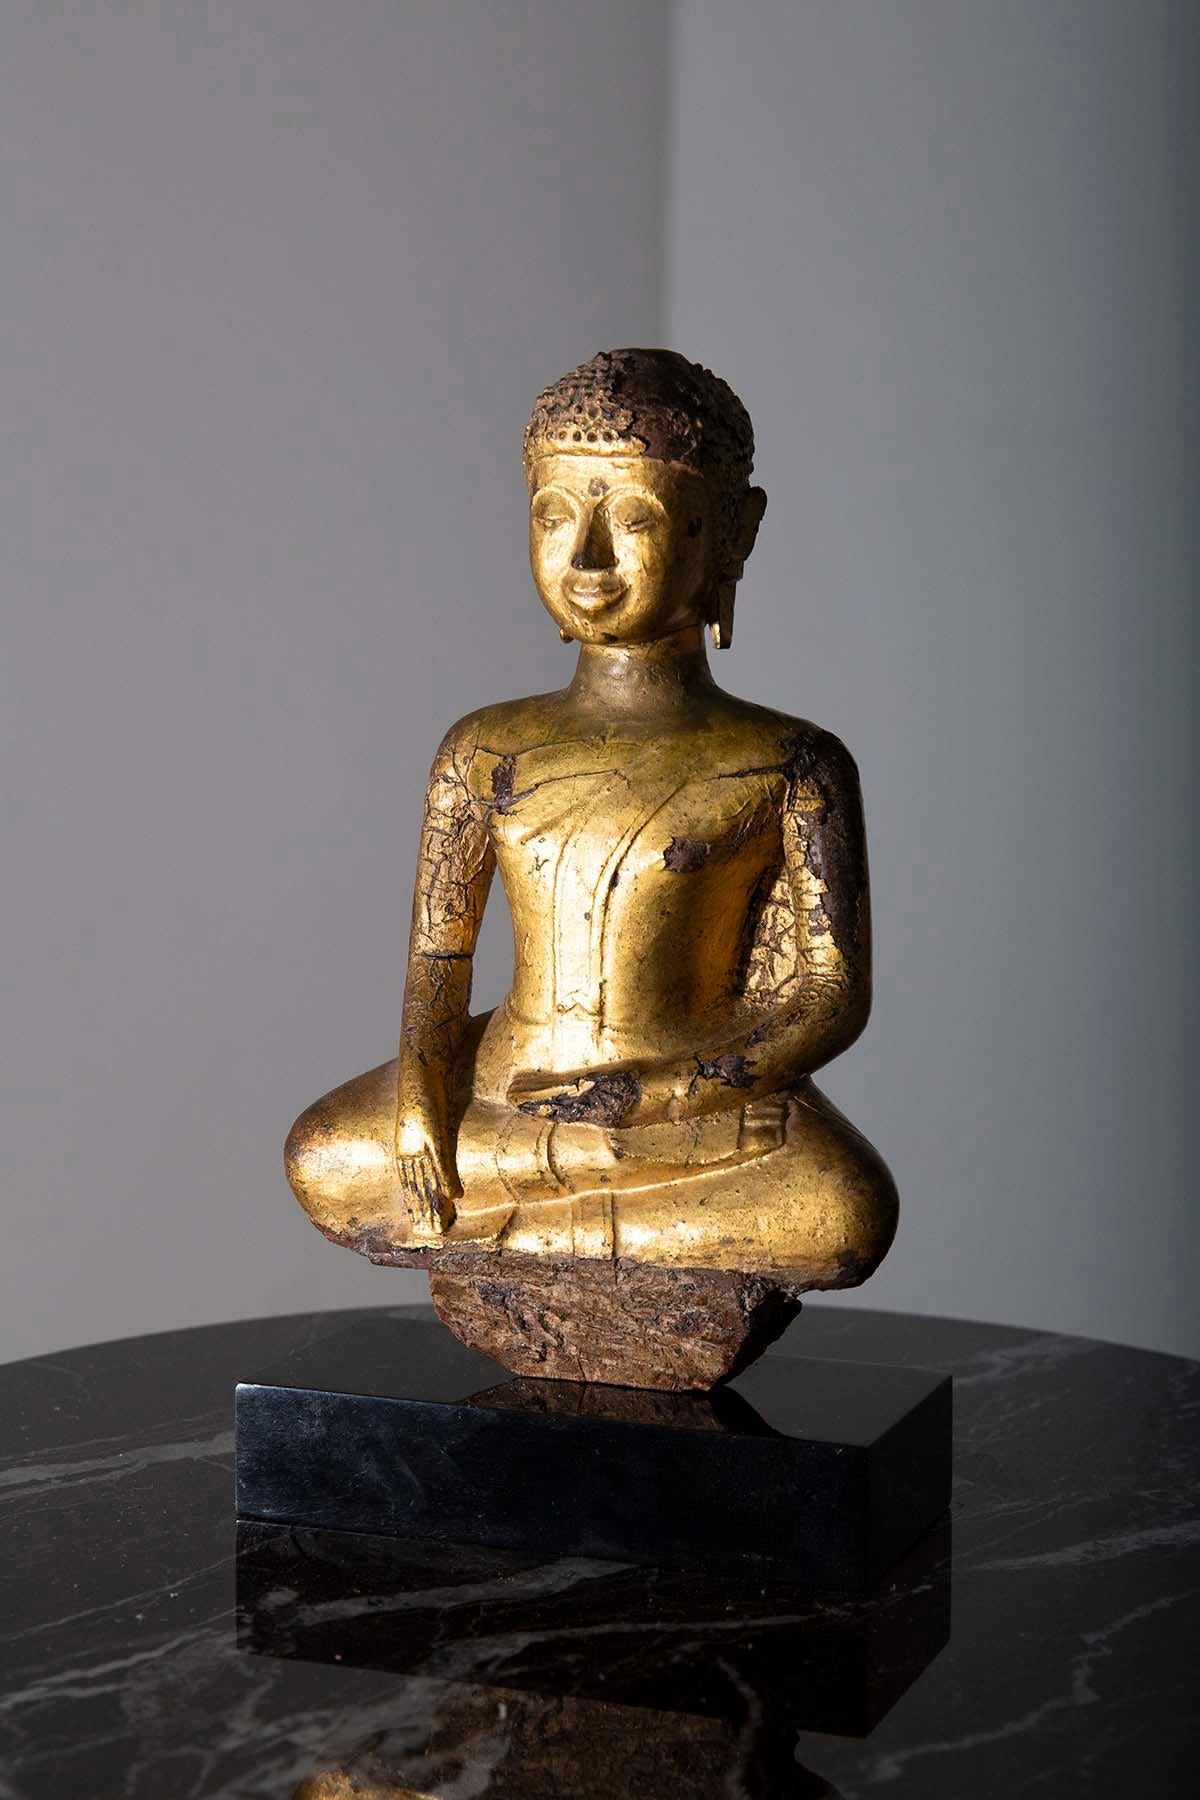 Im Herzen eines ruhigen Heiligtums befindet sich ein erhabenes Meisterwerk, eine Statue von Buddha Shakyamuni, eine Figur, die Gelassenheit und Erleuchtung ausstrahlt. Wenn man sich dieser göttlichen Skulptur nähert, kann man nicht anders, als von